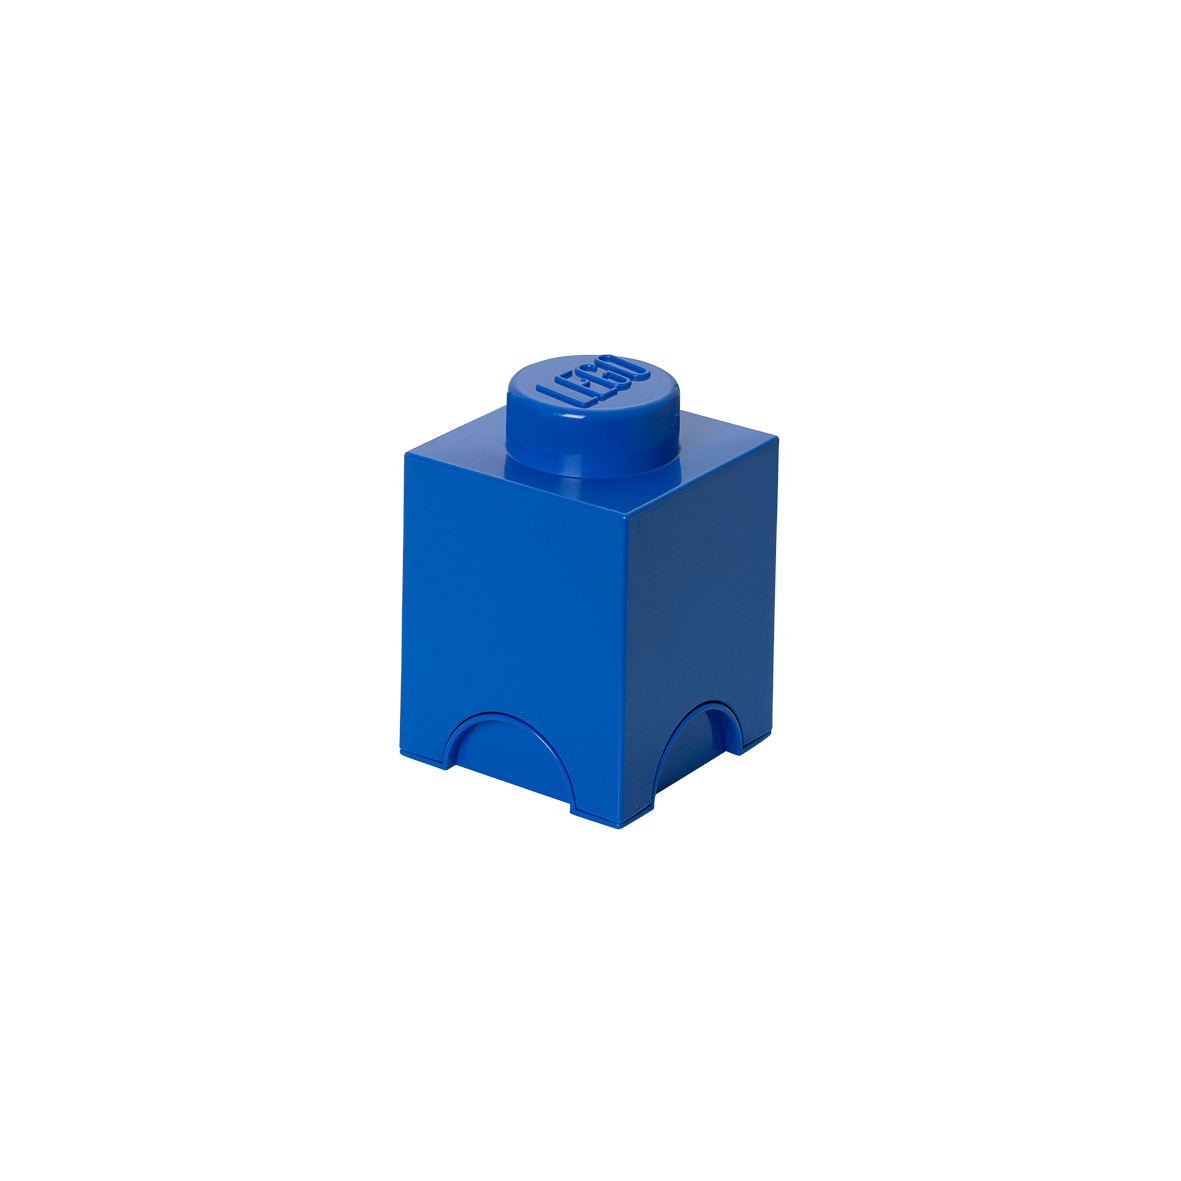 ΚΟΥΤΙ ΑΠΟΘΗΚΕΥΣΗΣ LEGO ΤΕΤΡΑΓΩΝΟ ΜΙΚΡΟ ΜΠΛΕ 12x12x18cm- 40011731